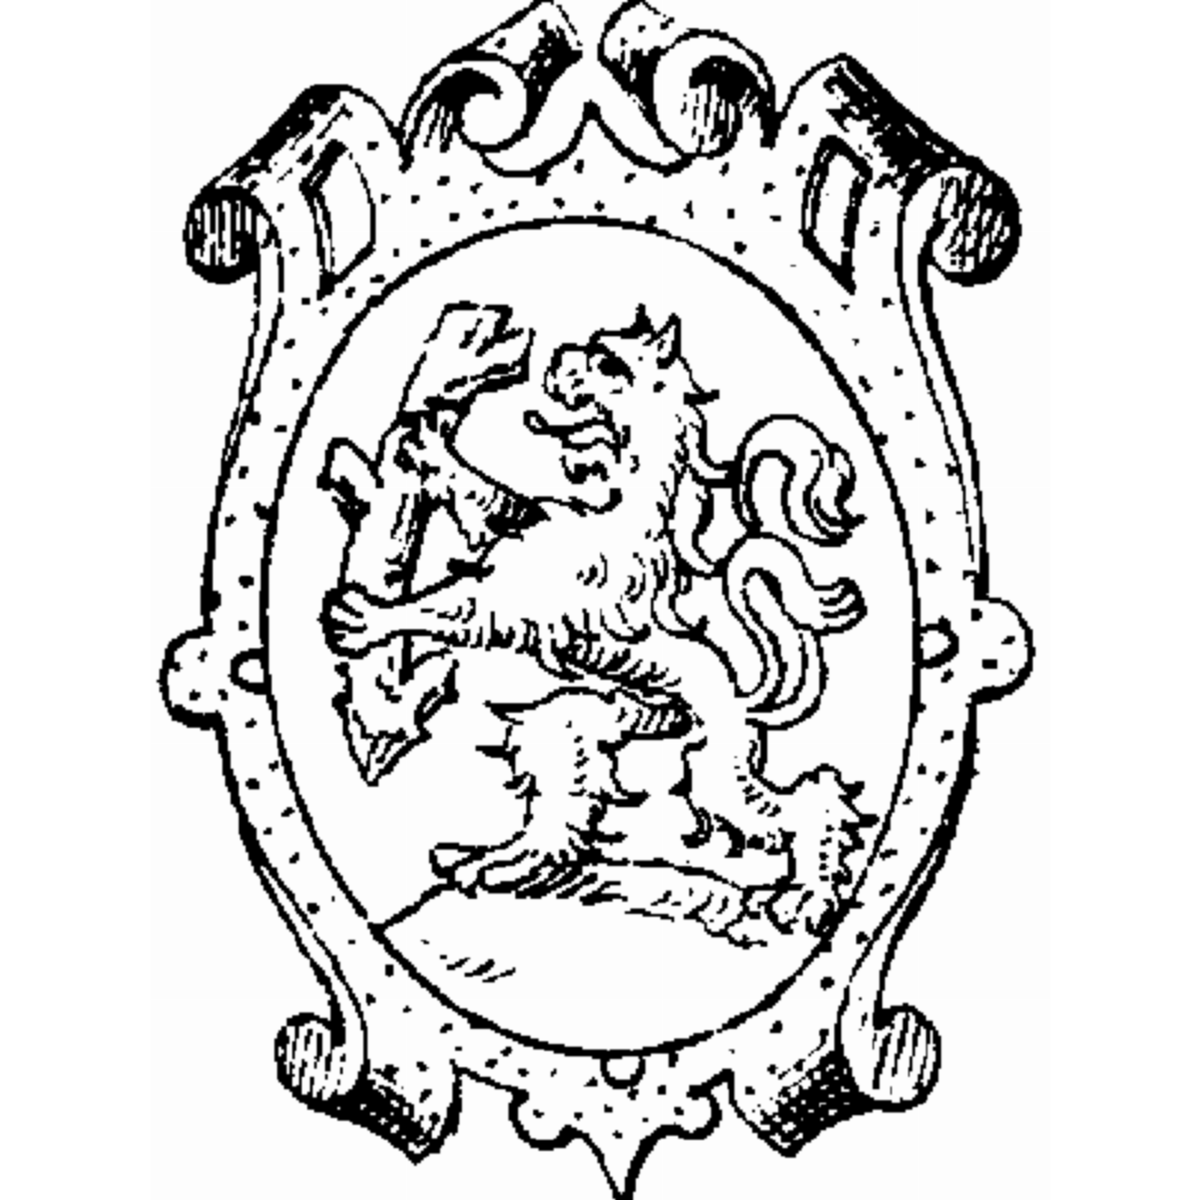 Coat of arms of family Dennler